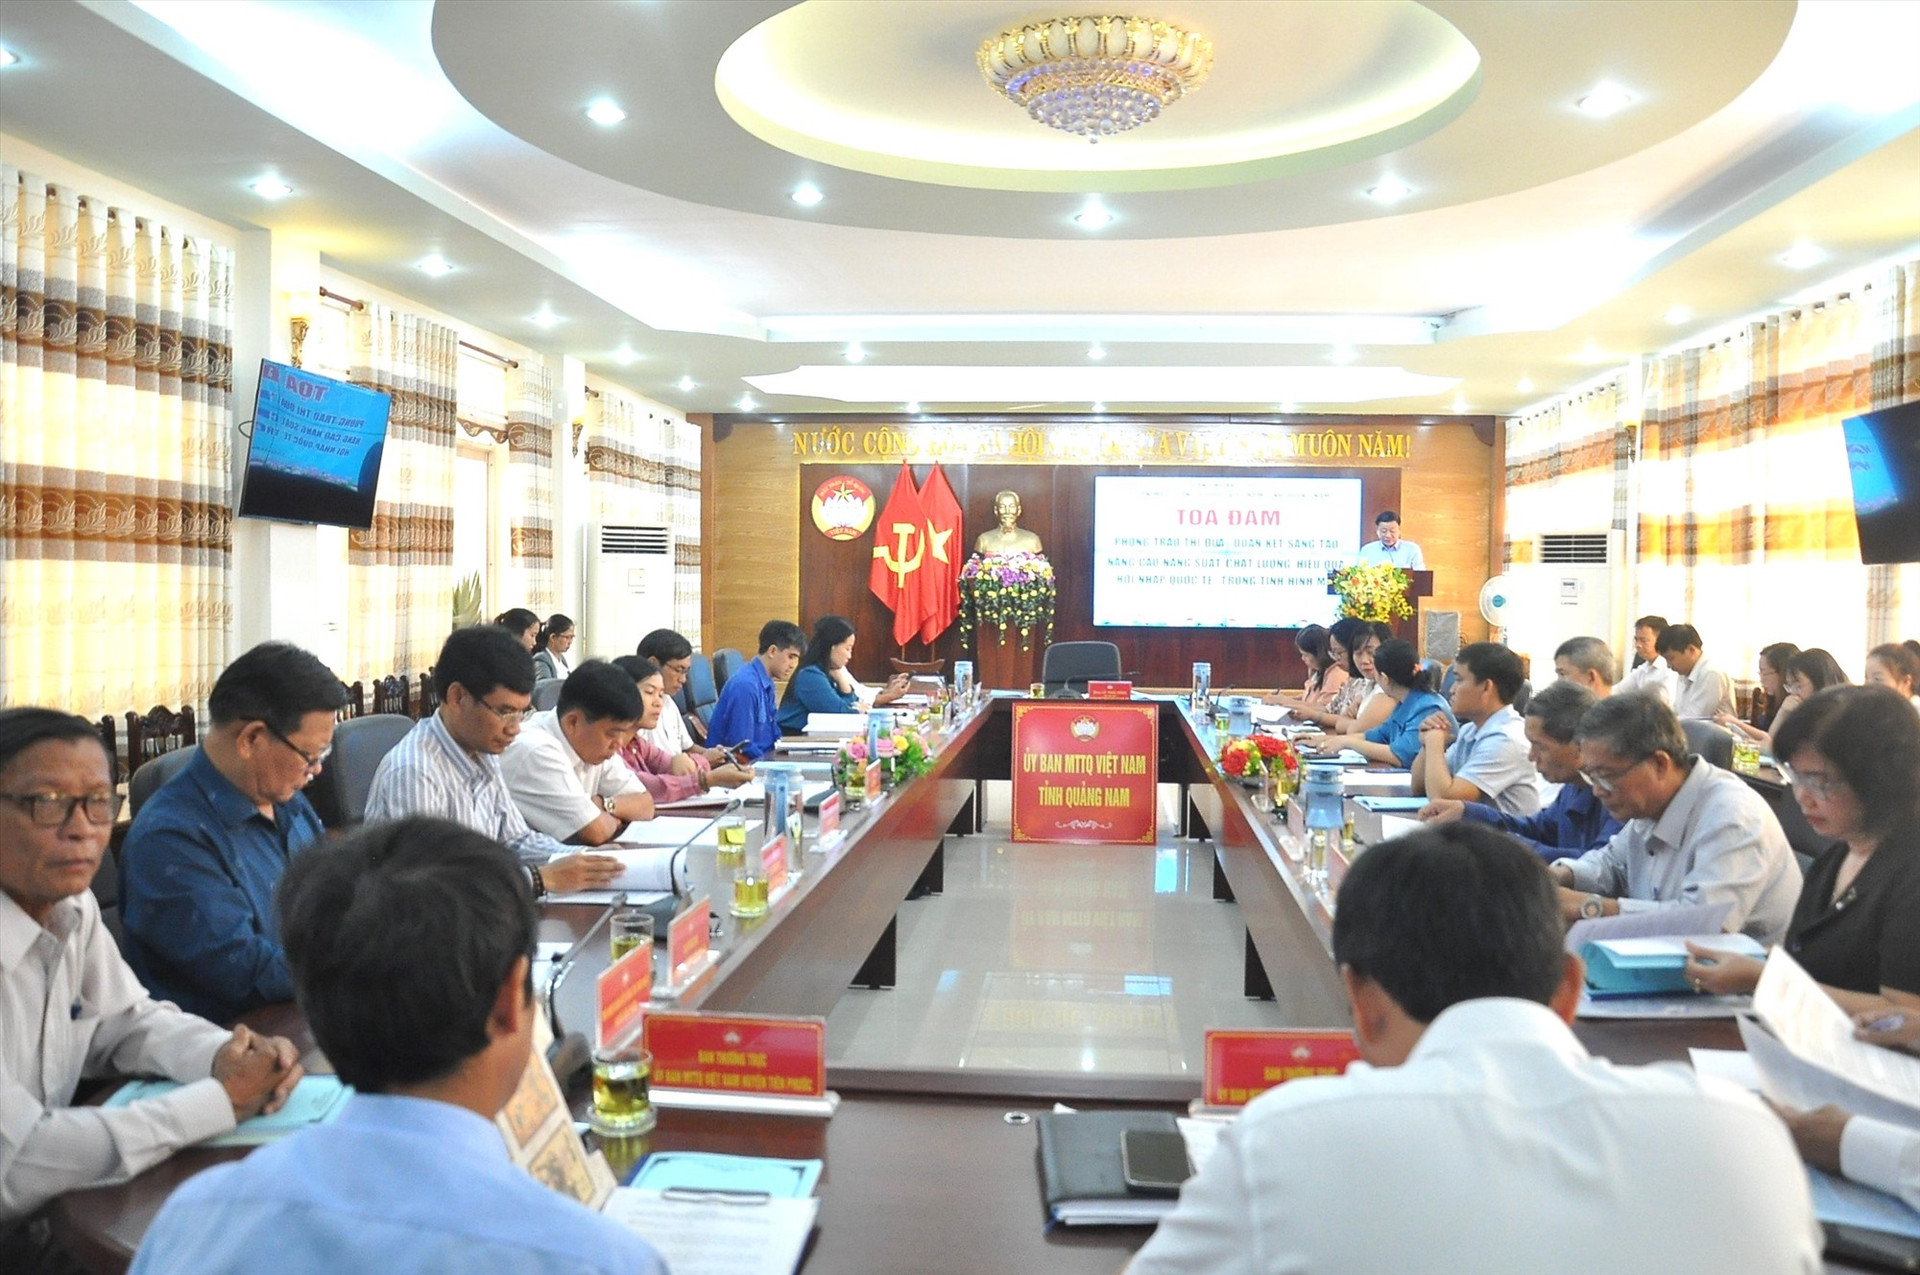 Ủy ban MTTQ Việt Nam tỉnh vừa tổ chức tọa đàm phong trào thi đua “Đoàn kết sáng tạo, nâng cao năng suất, chất lượng, hiệu quả, hội nhập quốc tế“. Ảnh: V.A